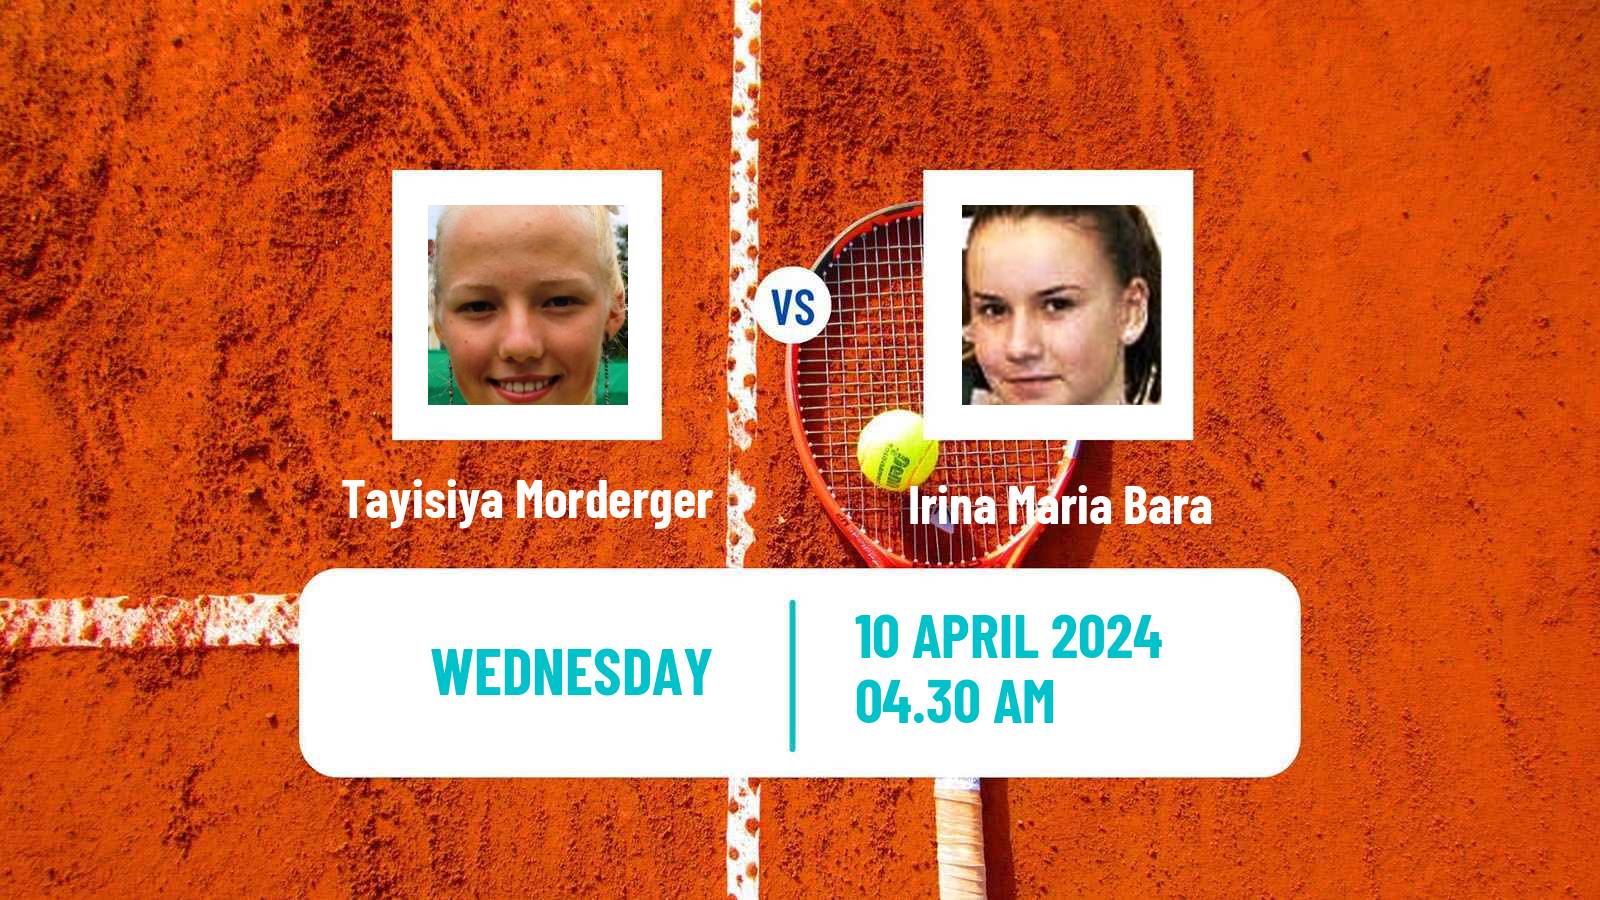 Tennis ITF W75 Bellinzona Women Tayisiya Morderger - Irina Maria Bara